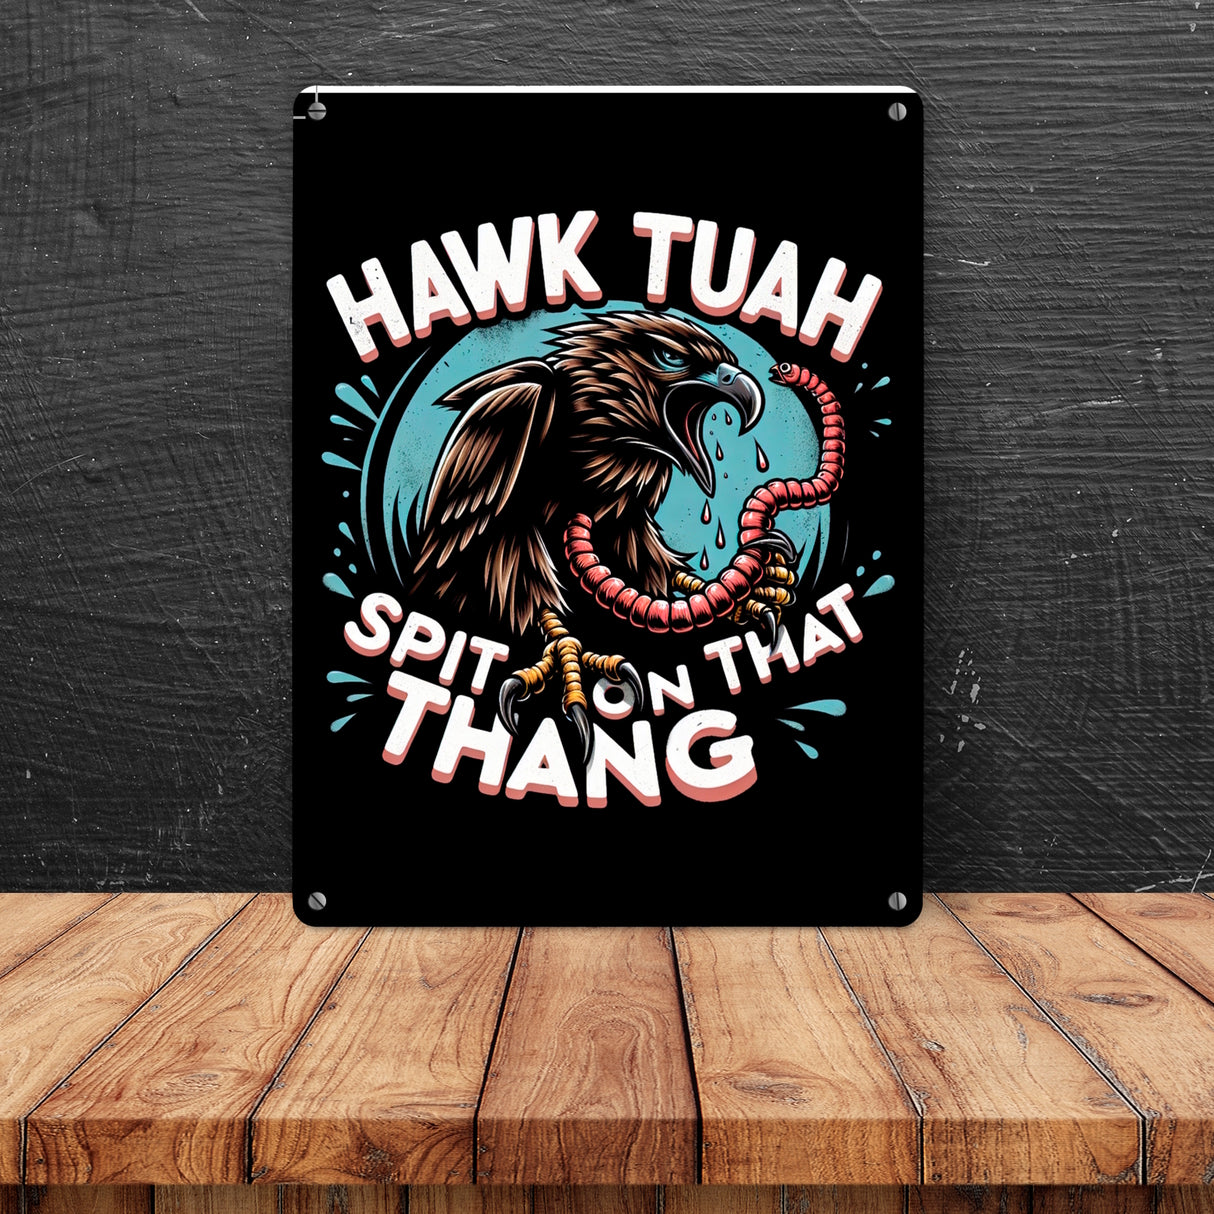 Hawk Tuah Falke mit Regenwurm Metallschild in 15x20 cm mit Spruch Spit on that thang